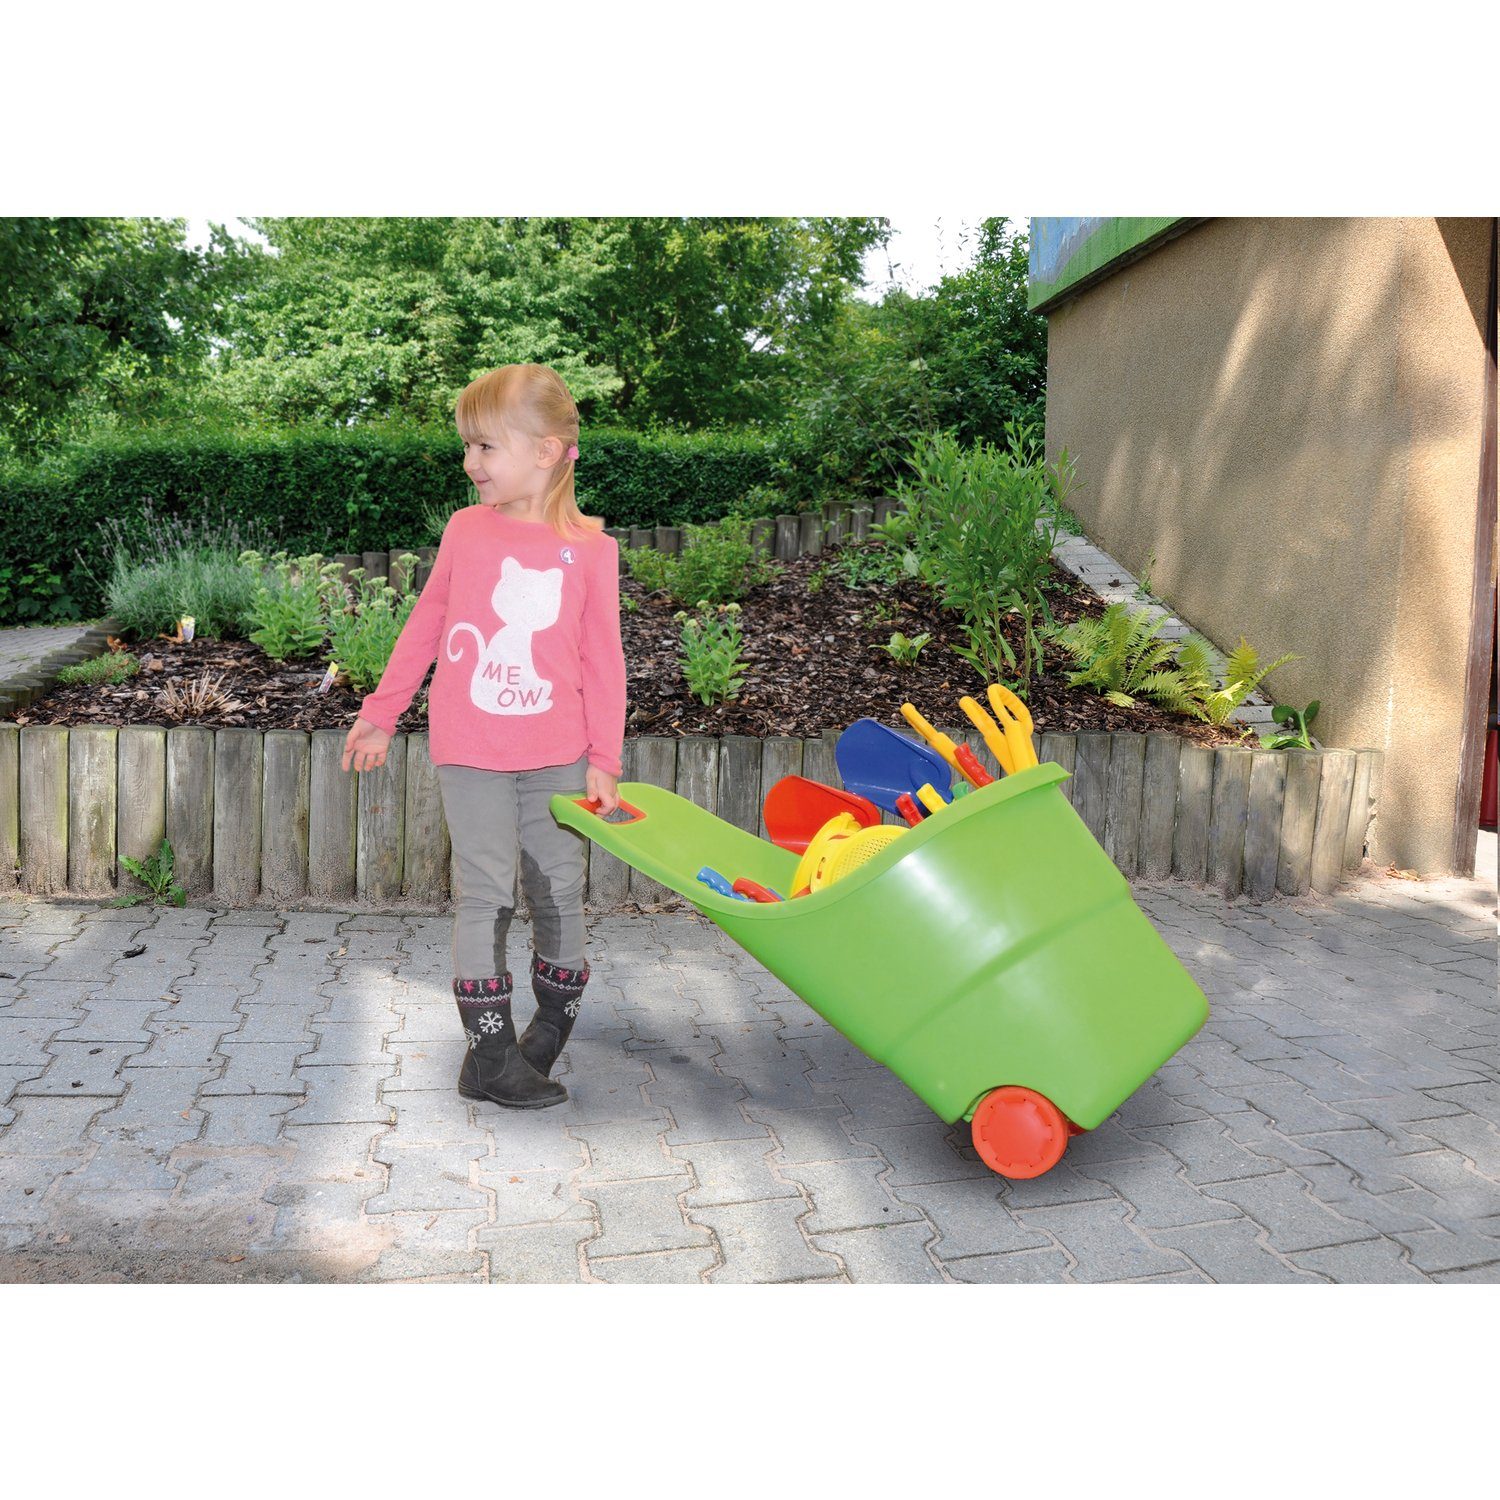 EDUPLAY Spielzeug-Gartenset Spielzeugkarre, 84 48 x Liter, 48,5 35 x cm